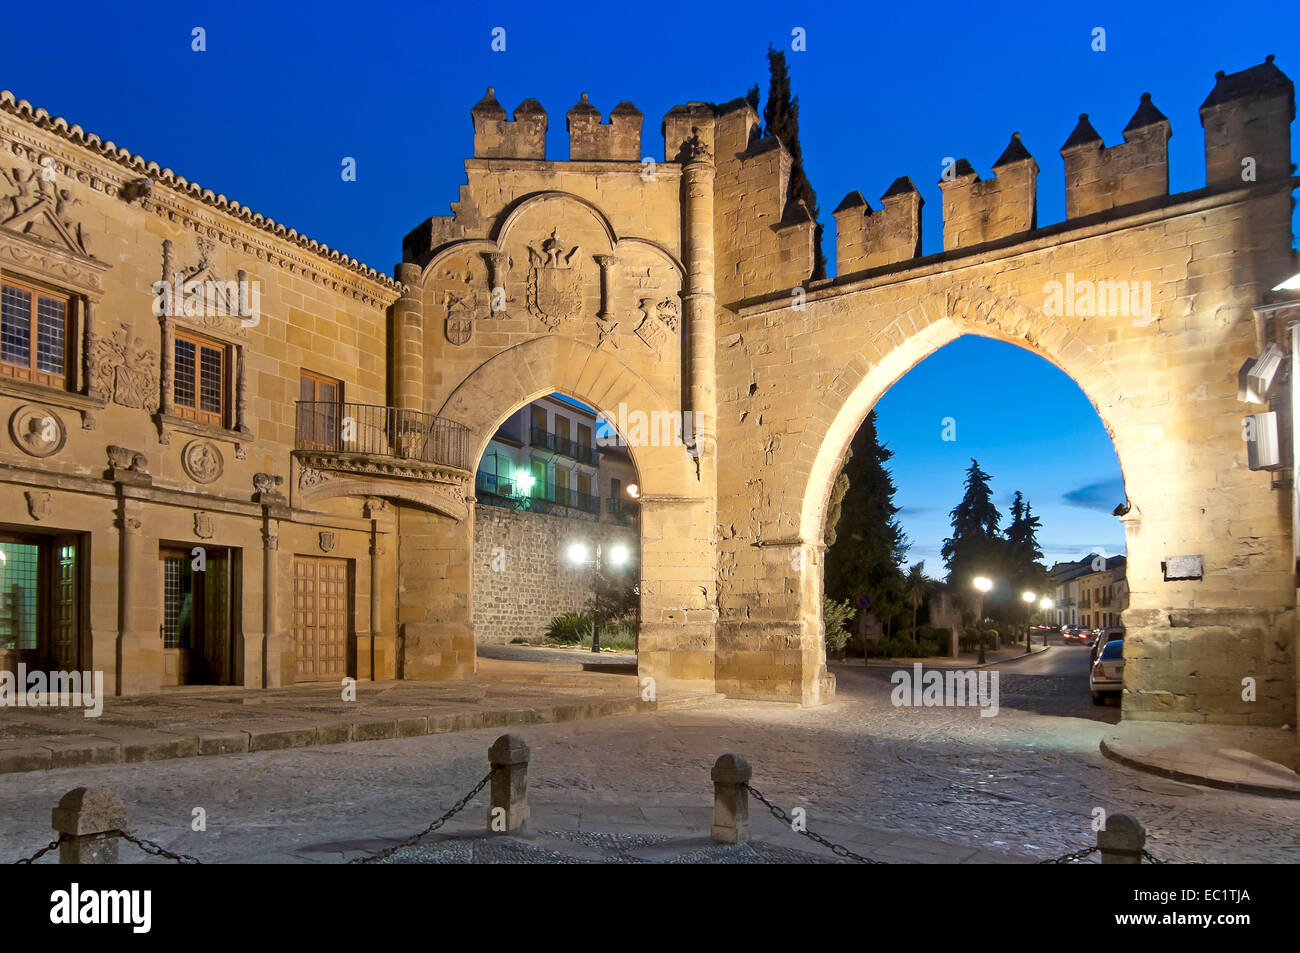 Jaen et porte de passage de Villalar, xvie siècle, Baeza, Jaen province, région d'Andalousie, Espagne, Europe Banque D'Images